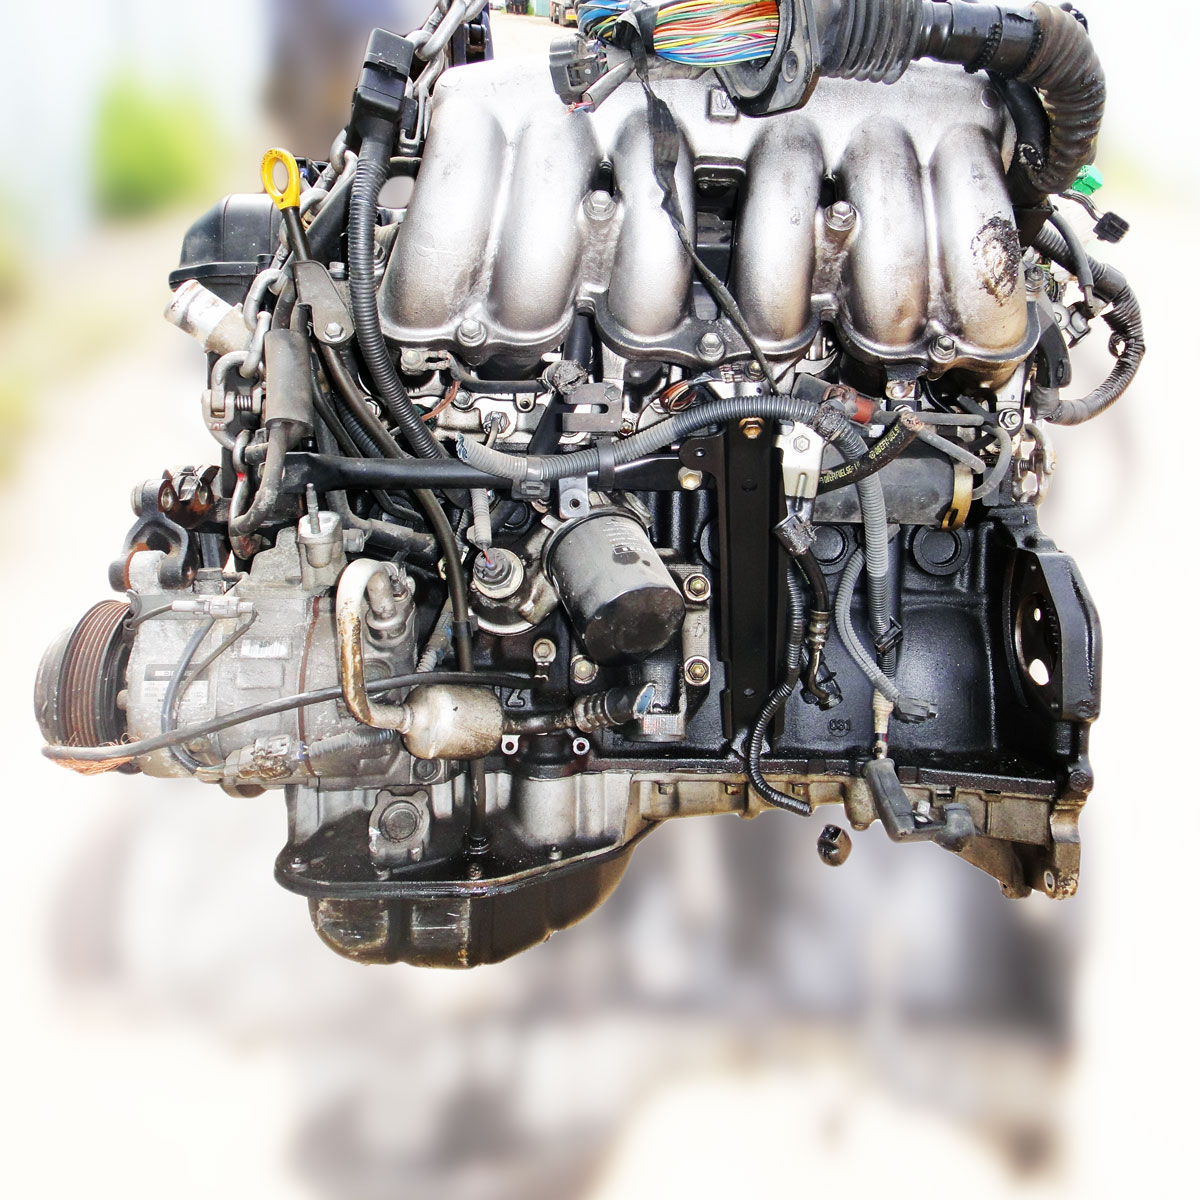 Двигатель 2jz- обзор двигателя. технические характеристики и тюнинг